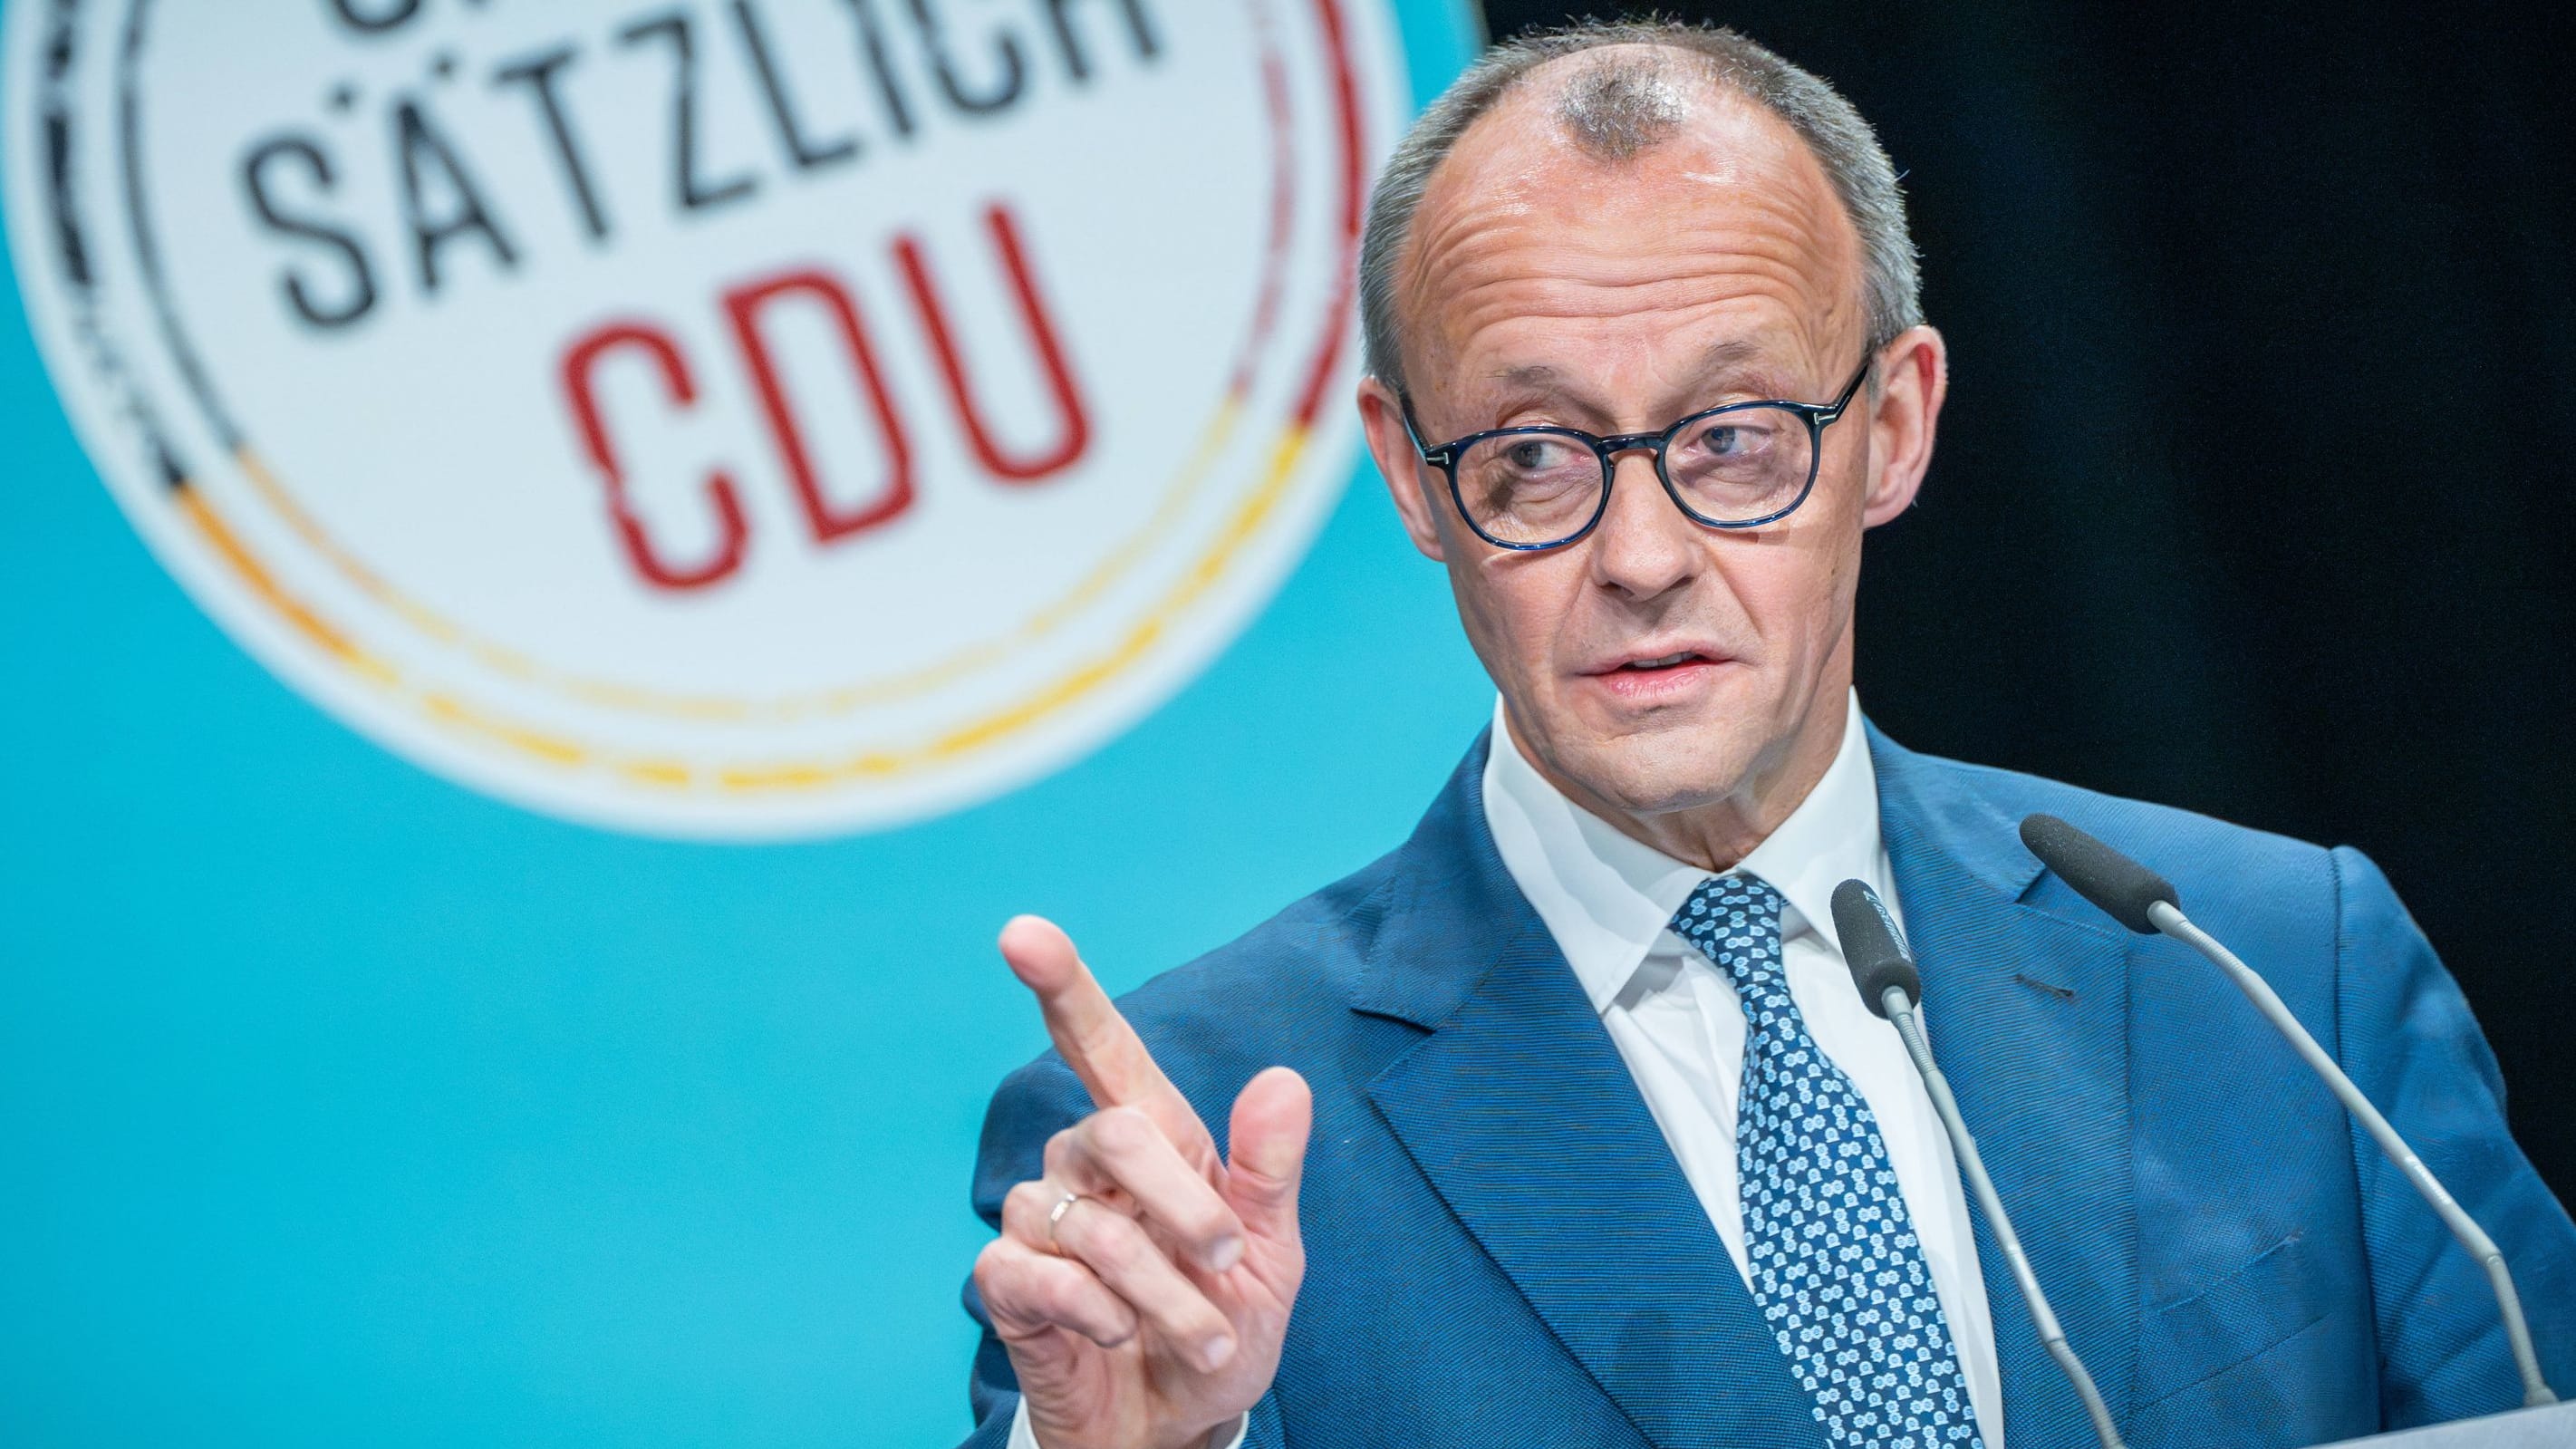 CDU-Streit zur Schuldenbremse: Das könnte für Friedrich Merz heikel werden